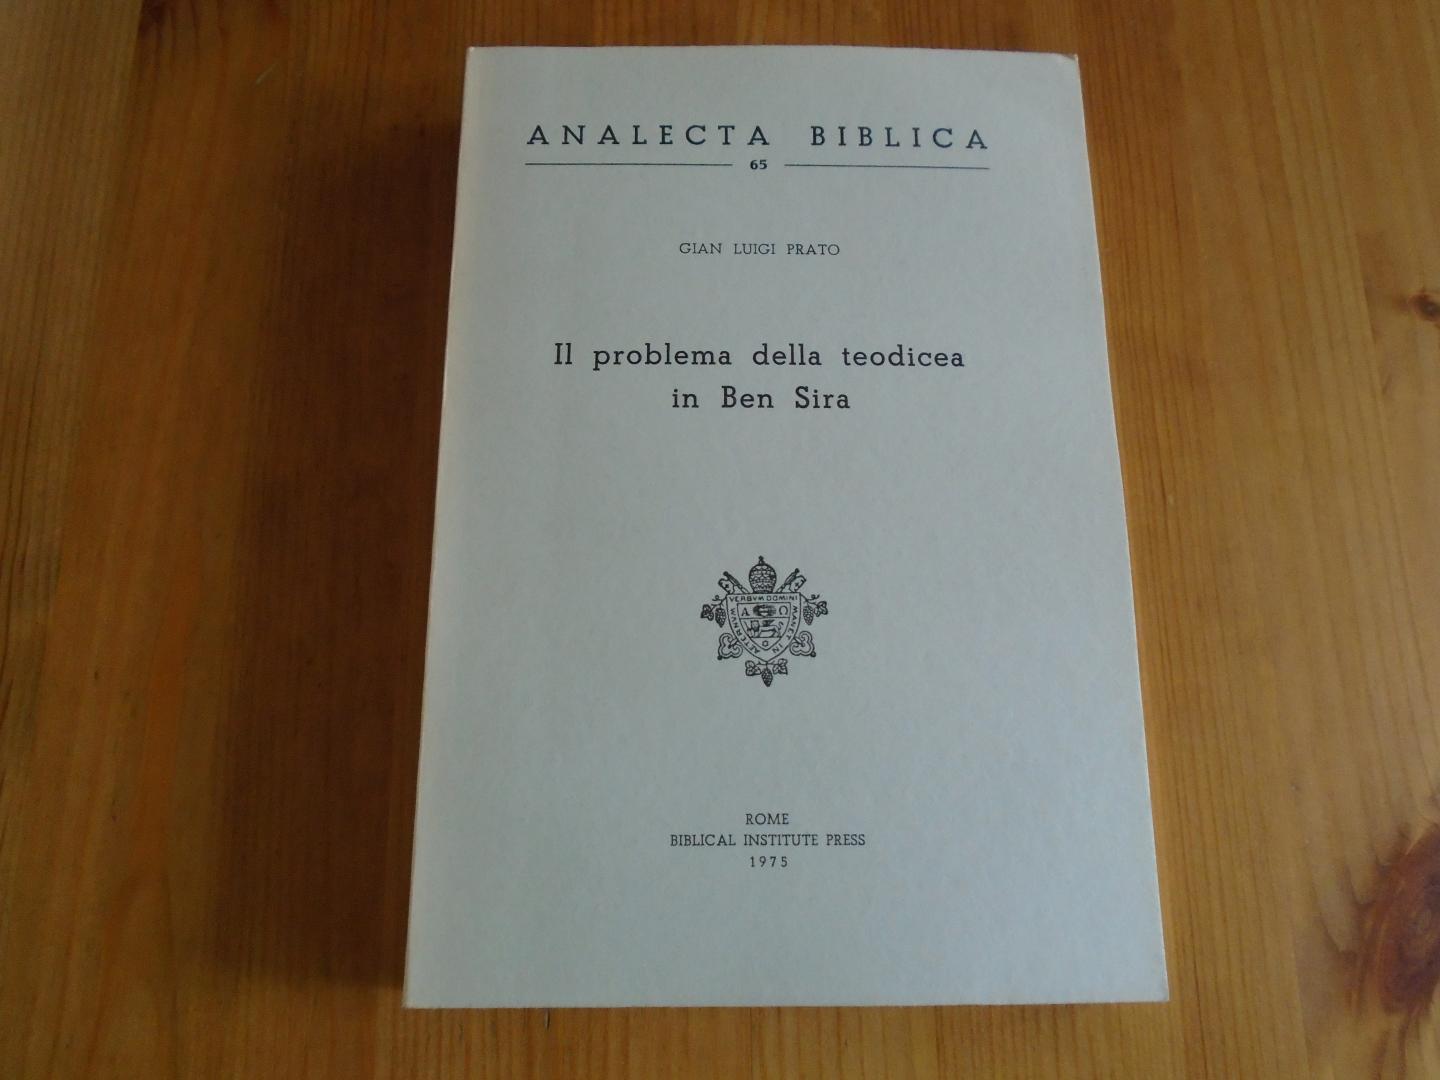 Prato, Gian Luigi - Il problema della teodicea in Ben Sira (Analecta Biblica 65)